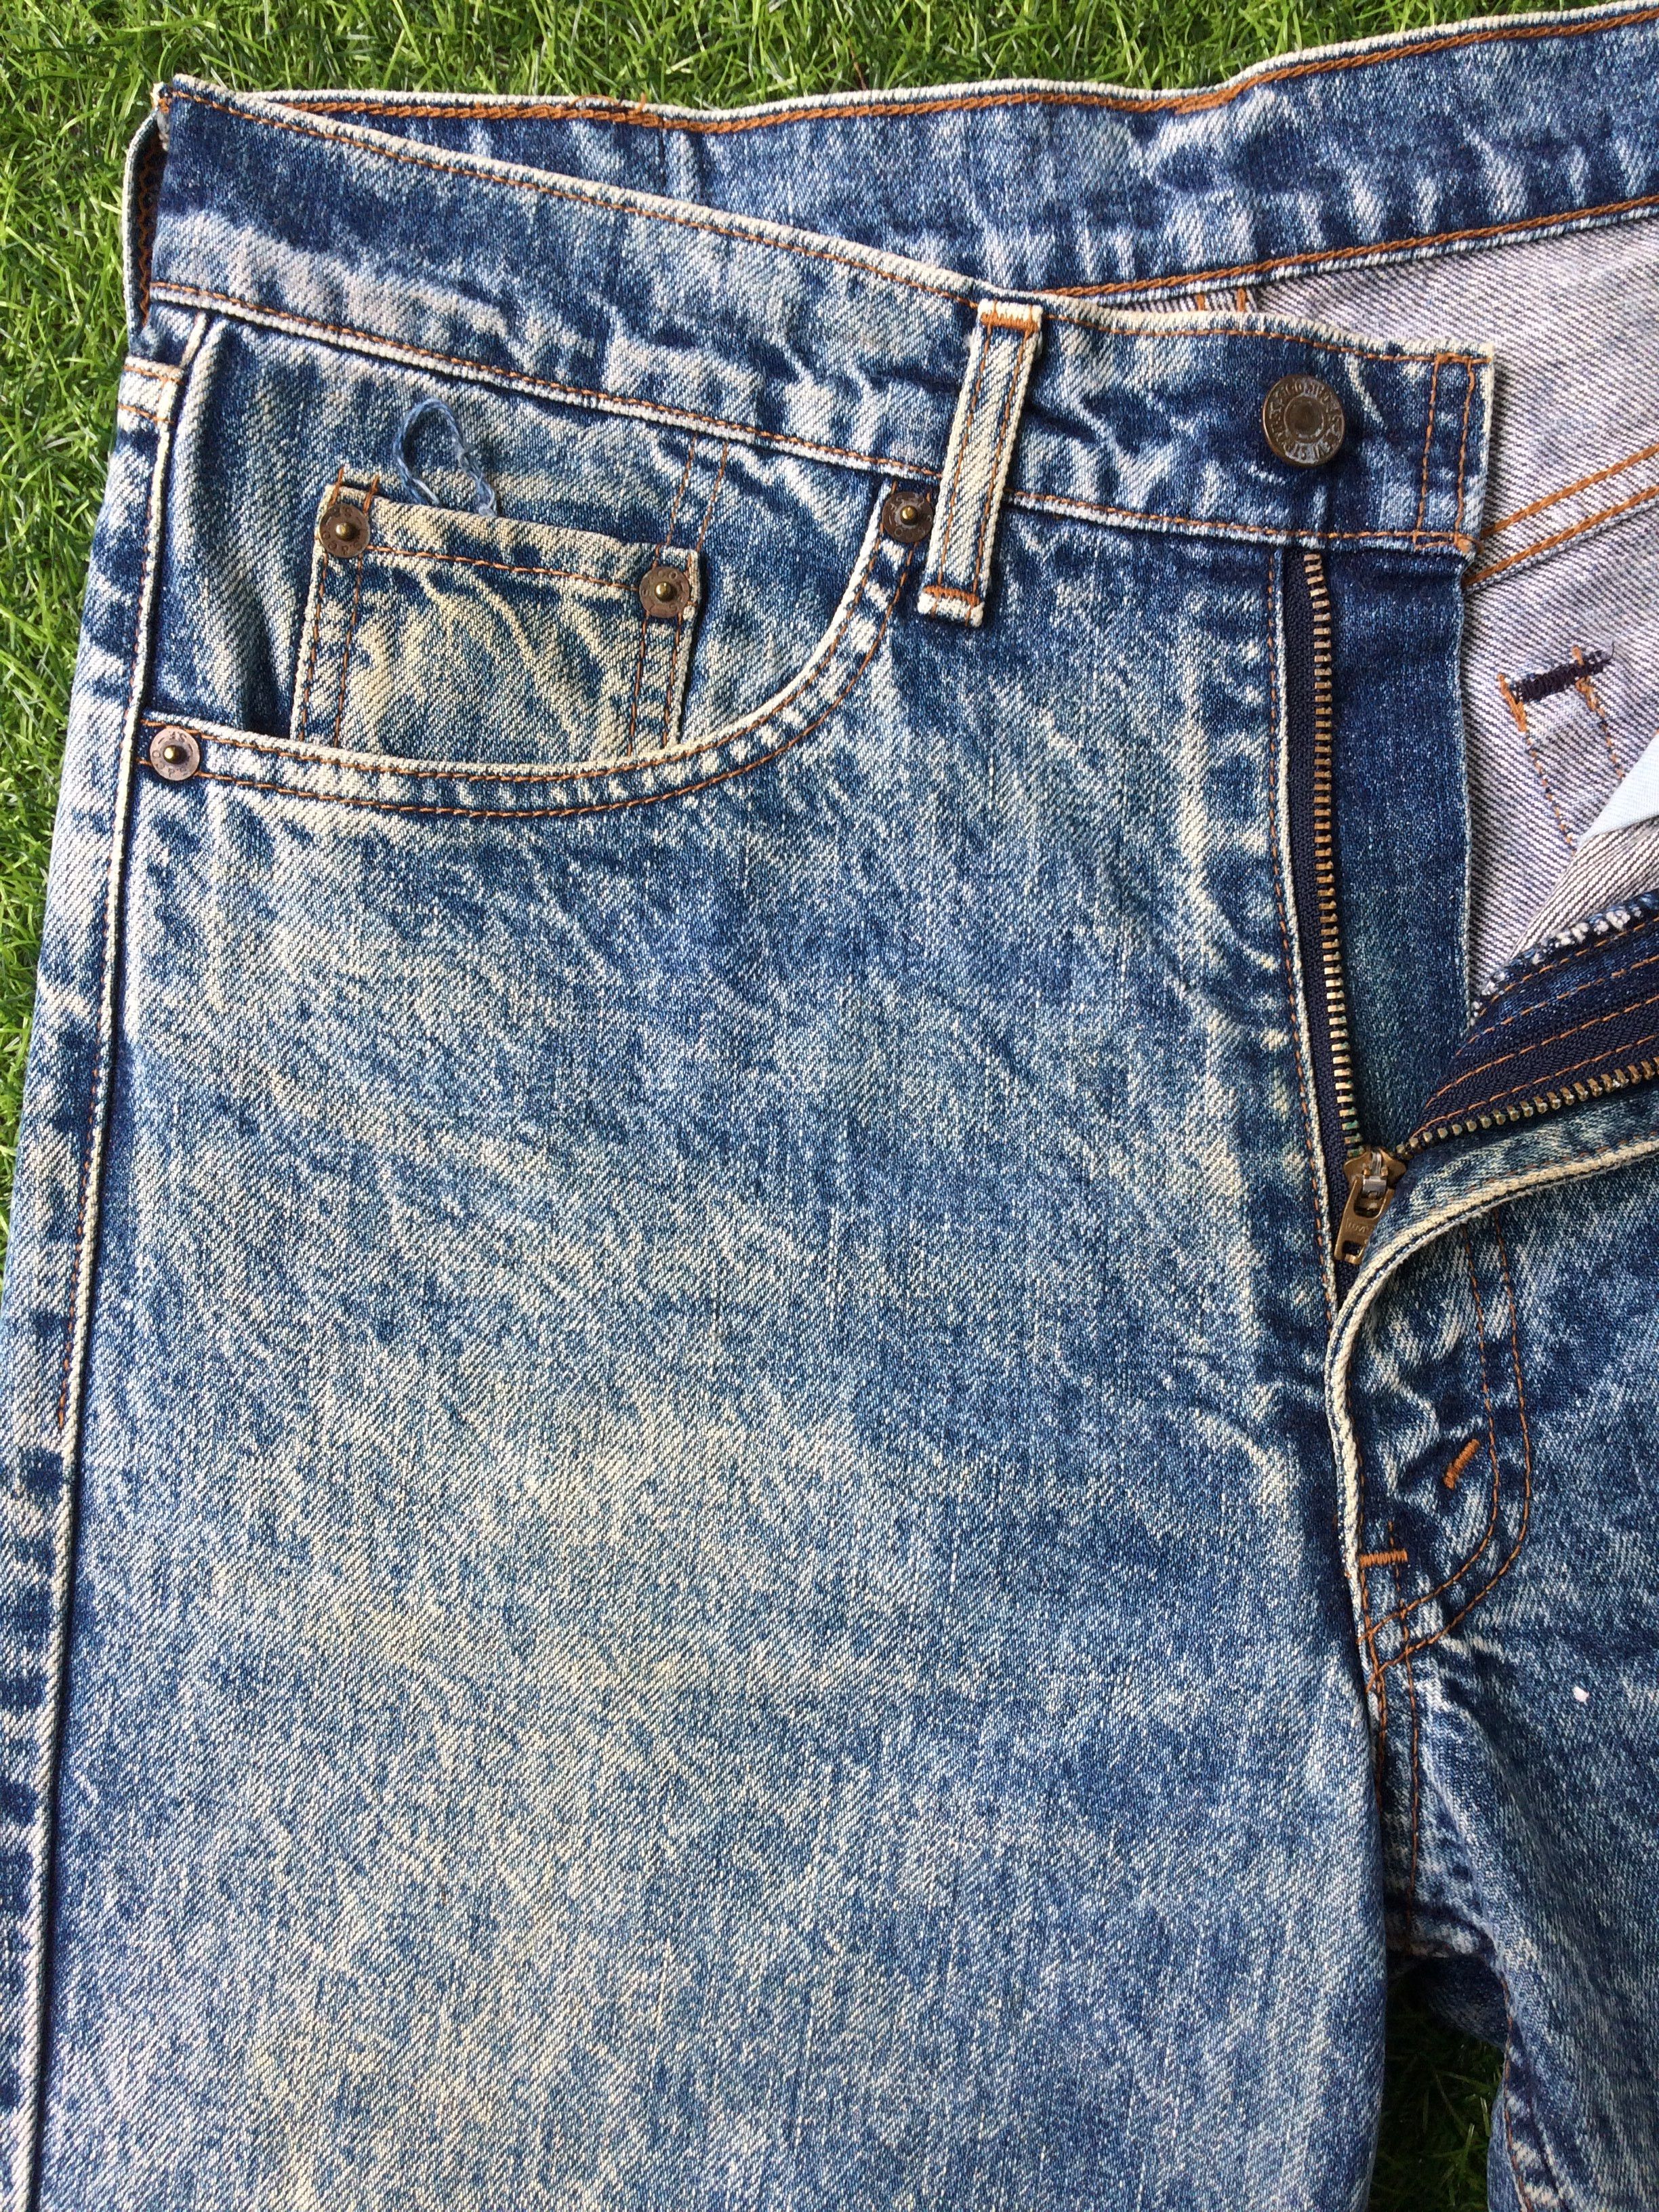 Vintage Distressed Levis 508 Acid Wash Jeans #B-495 Size US 30 / EU 46 - 3 Thumbnail